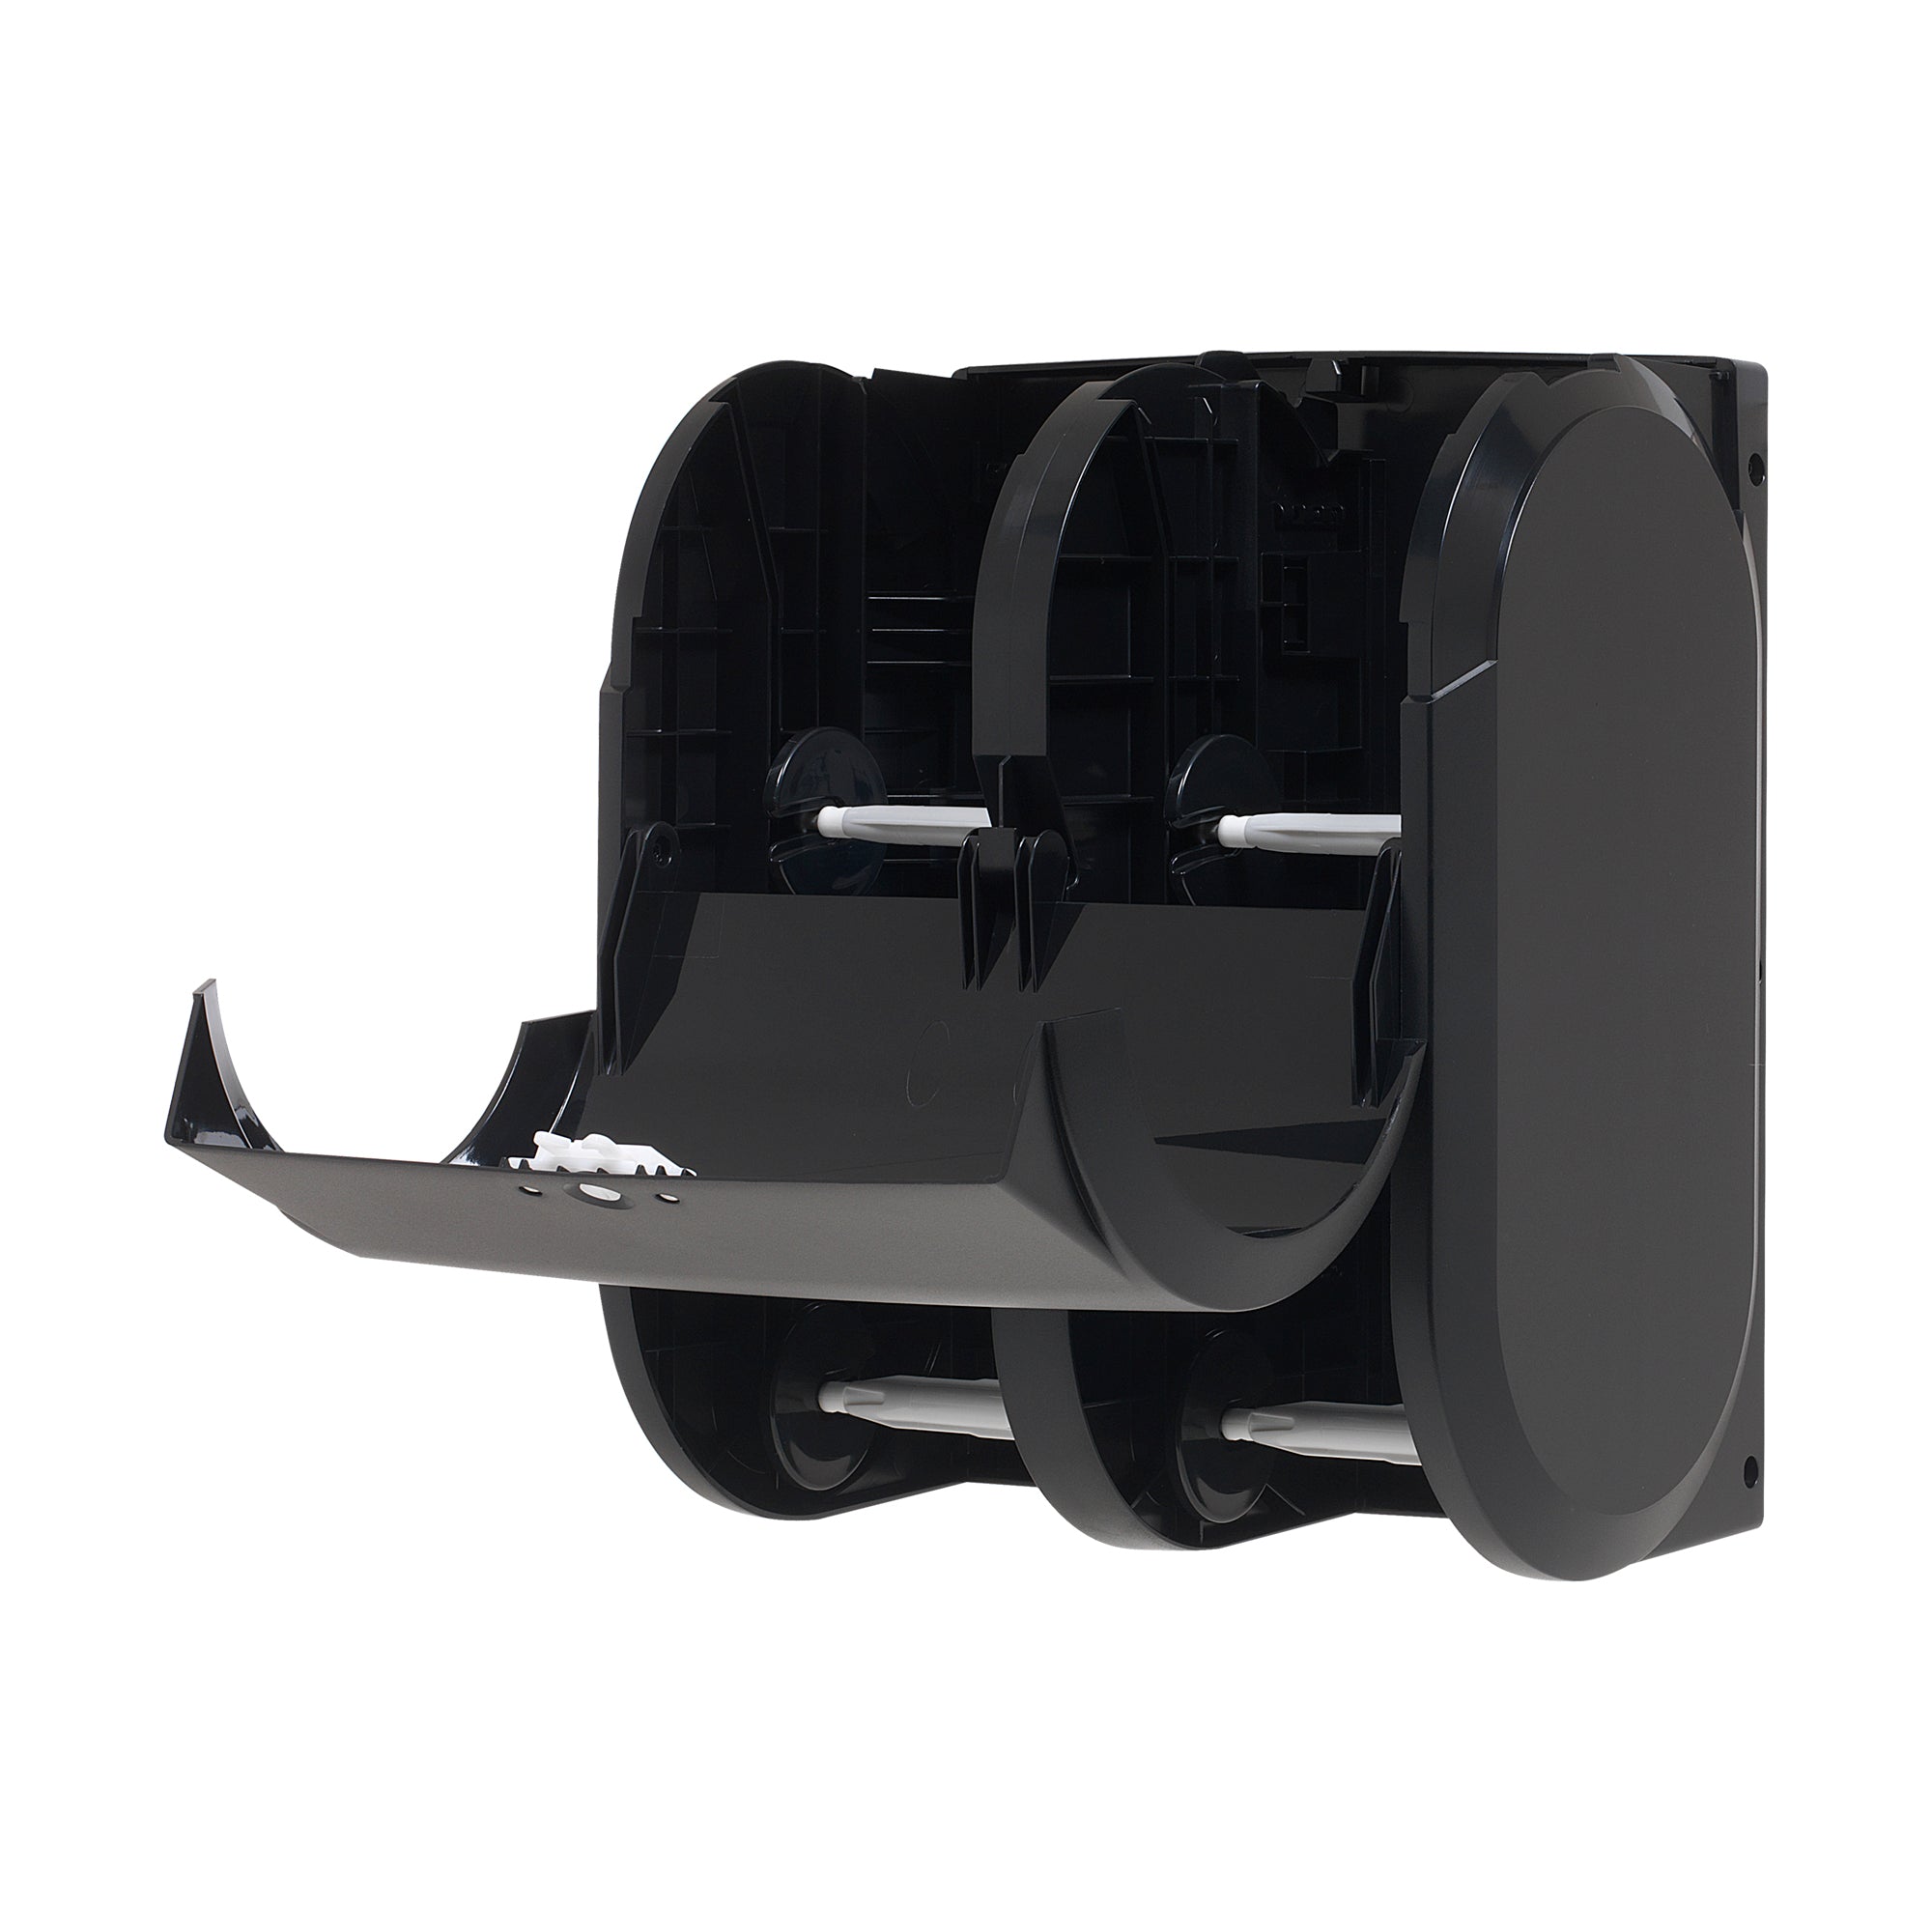 מתקן נייר טואלט בעל קיבולת גבוהה עם ארבעה גלילים ללא ליבות Compact®, שחור, מתקן אחד